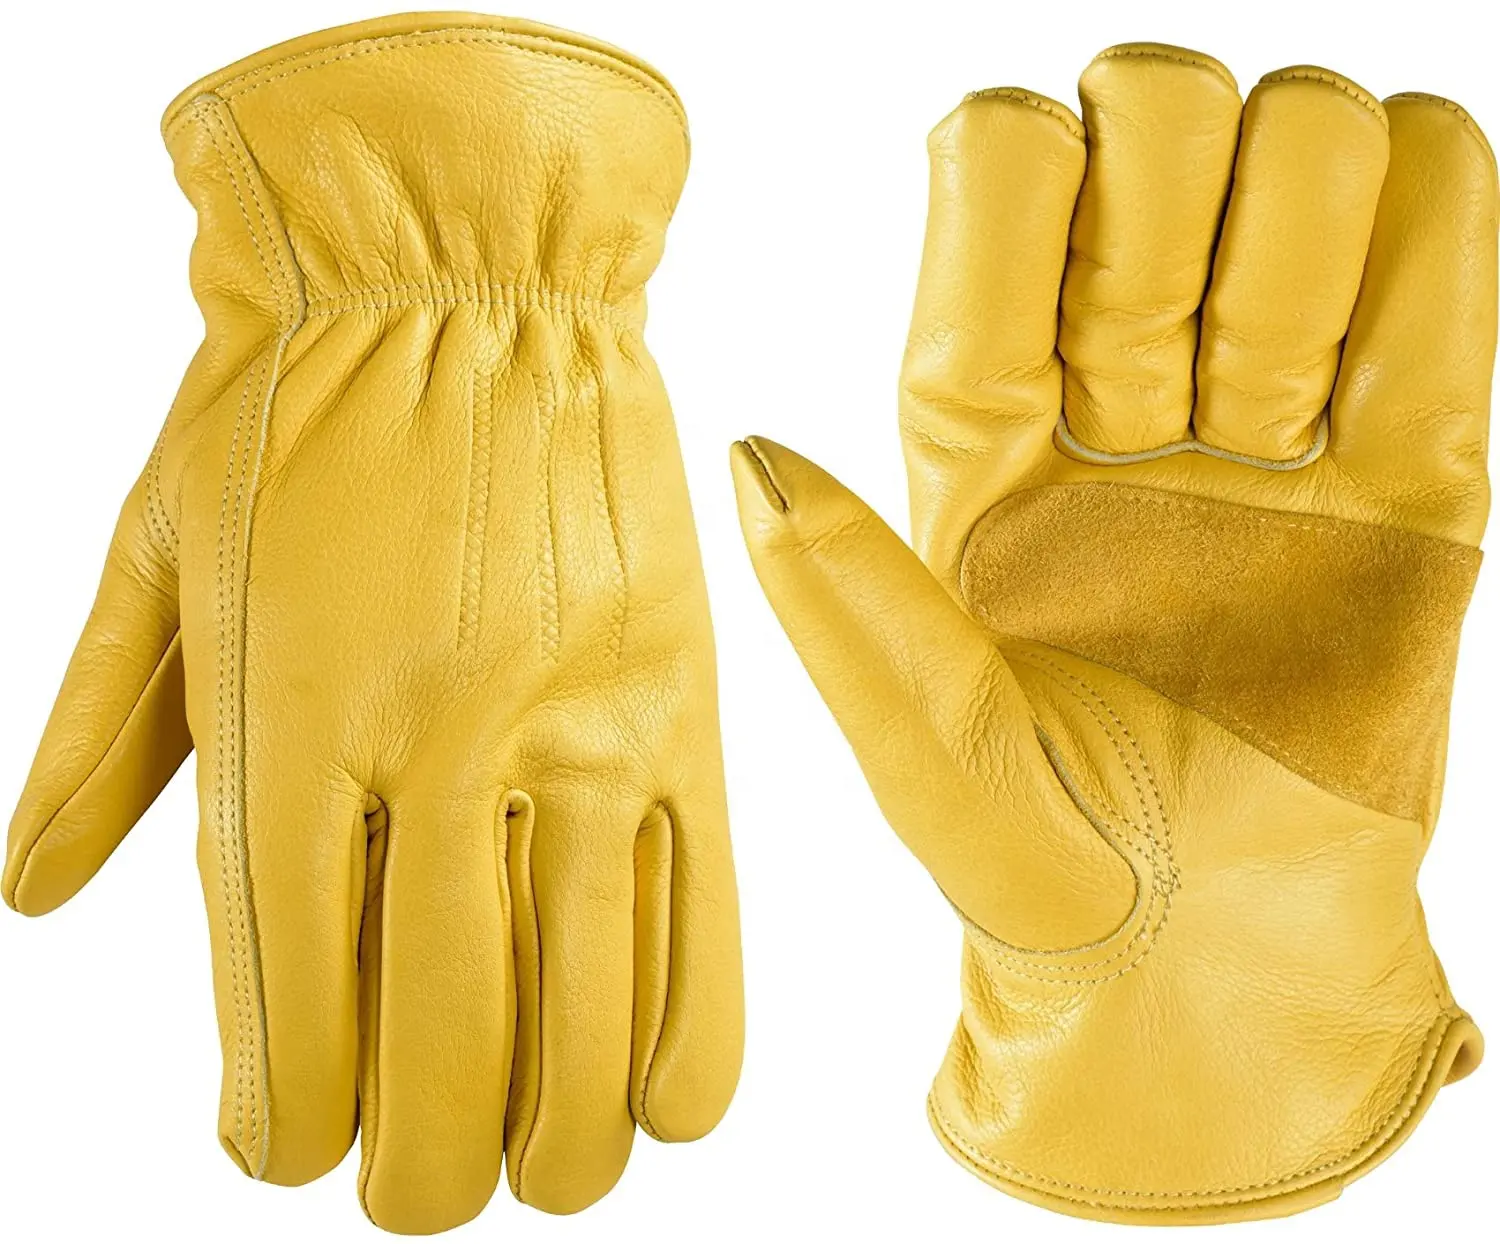 Anti Cut eldiven iş güvenliği eldiveni özel üretim şirketi toptan fiyatlar sarı renk deri